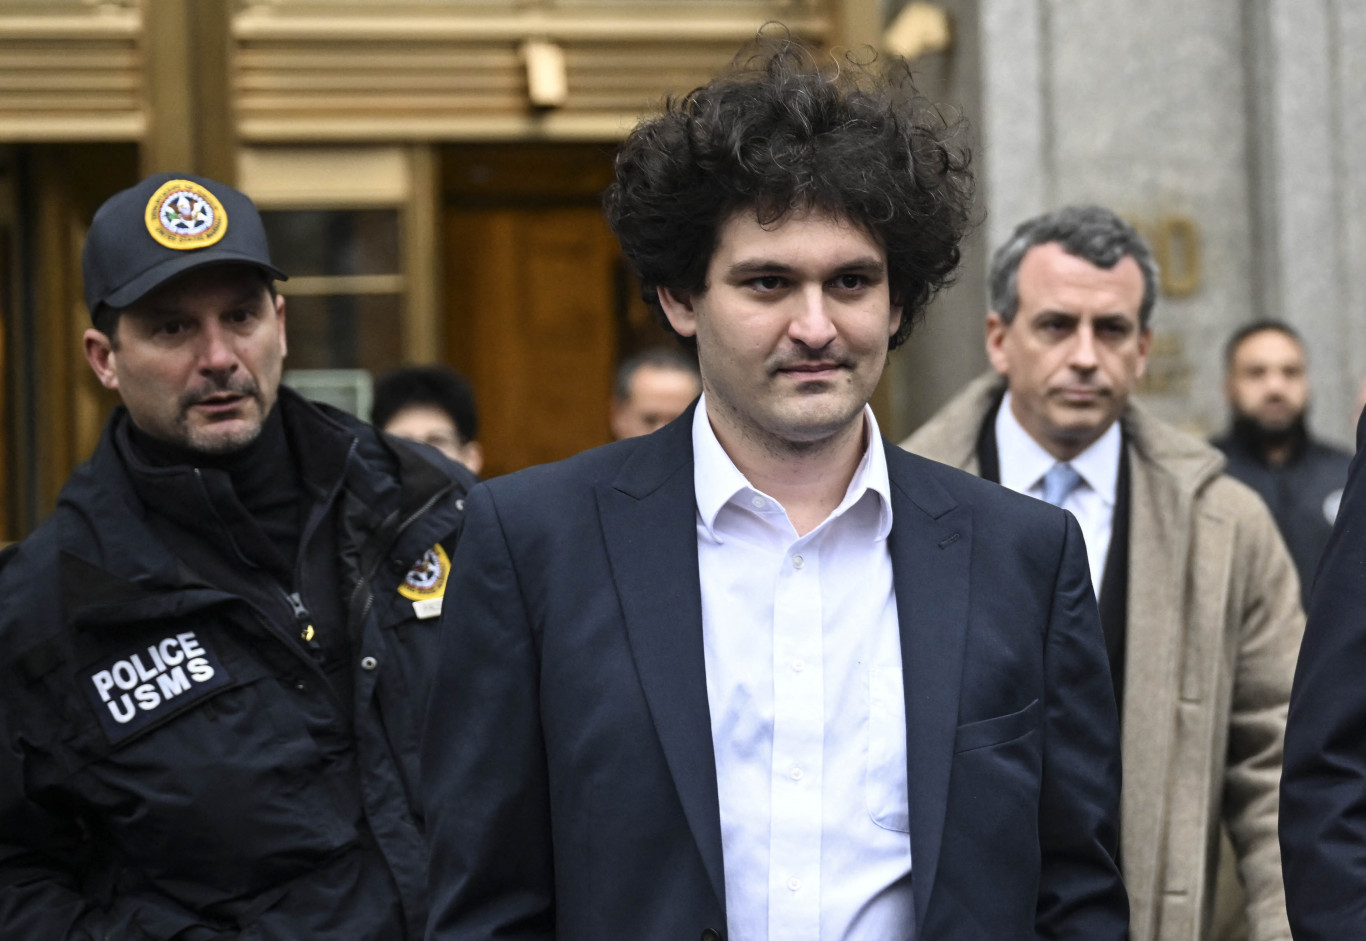 25 éves börtönbüntetésre ítélték a kriptovilág egykori királyát, Sam Bankman-Friedet